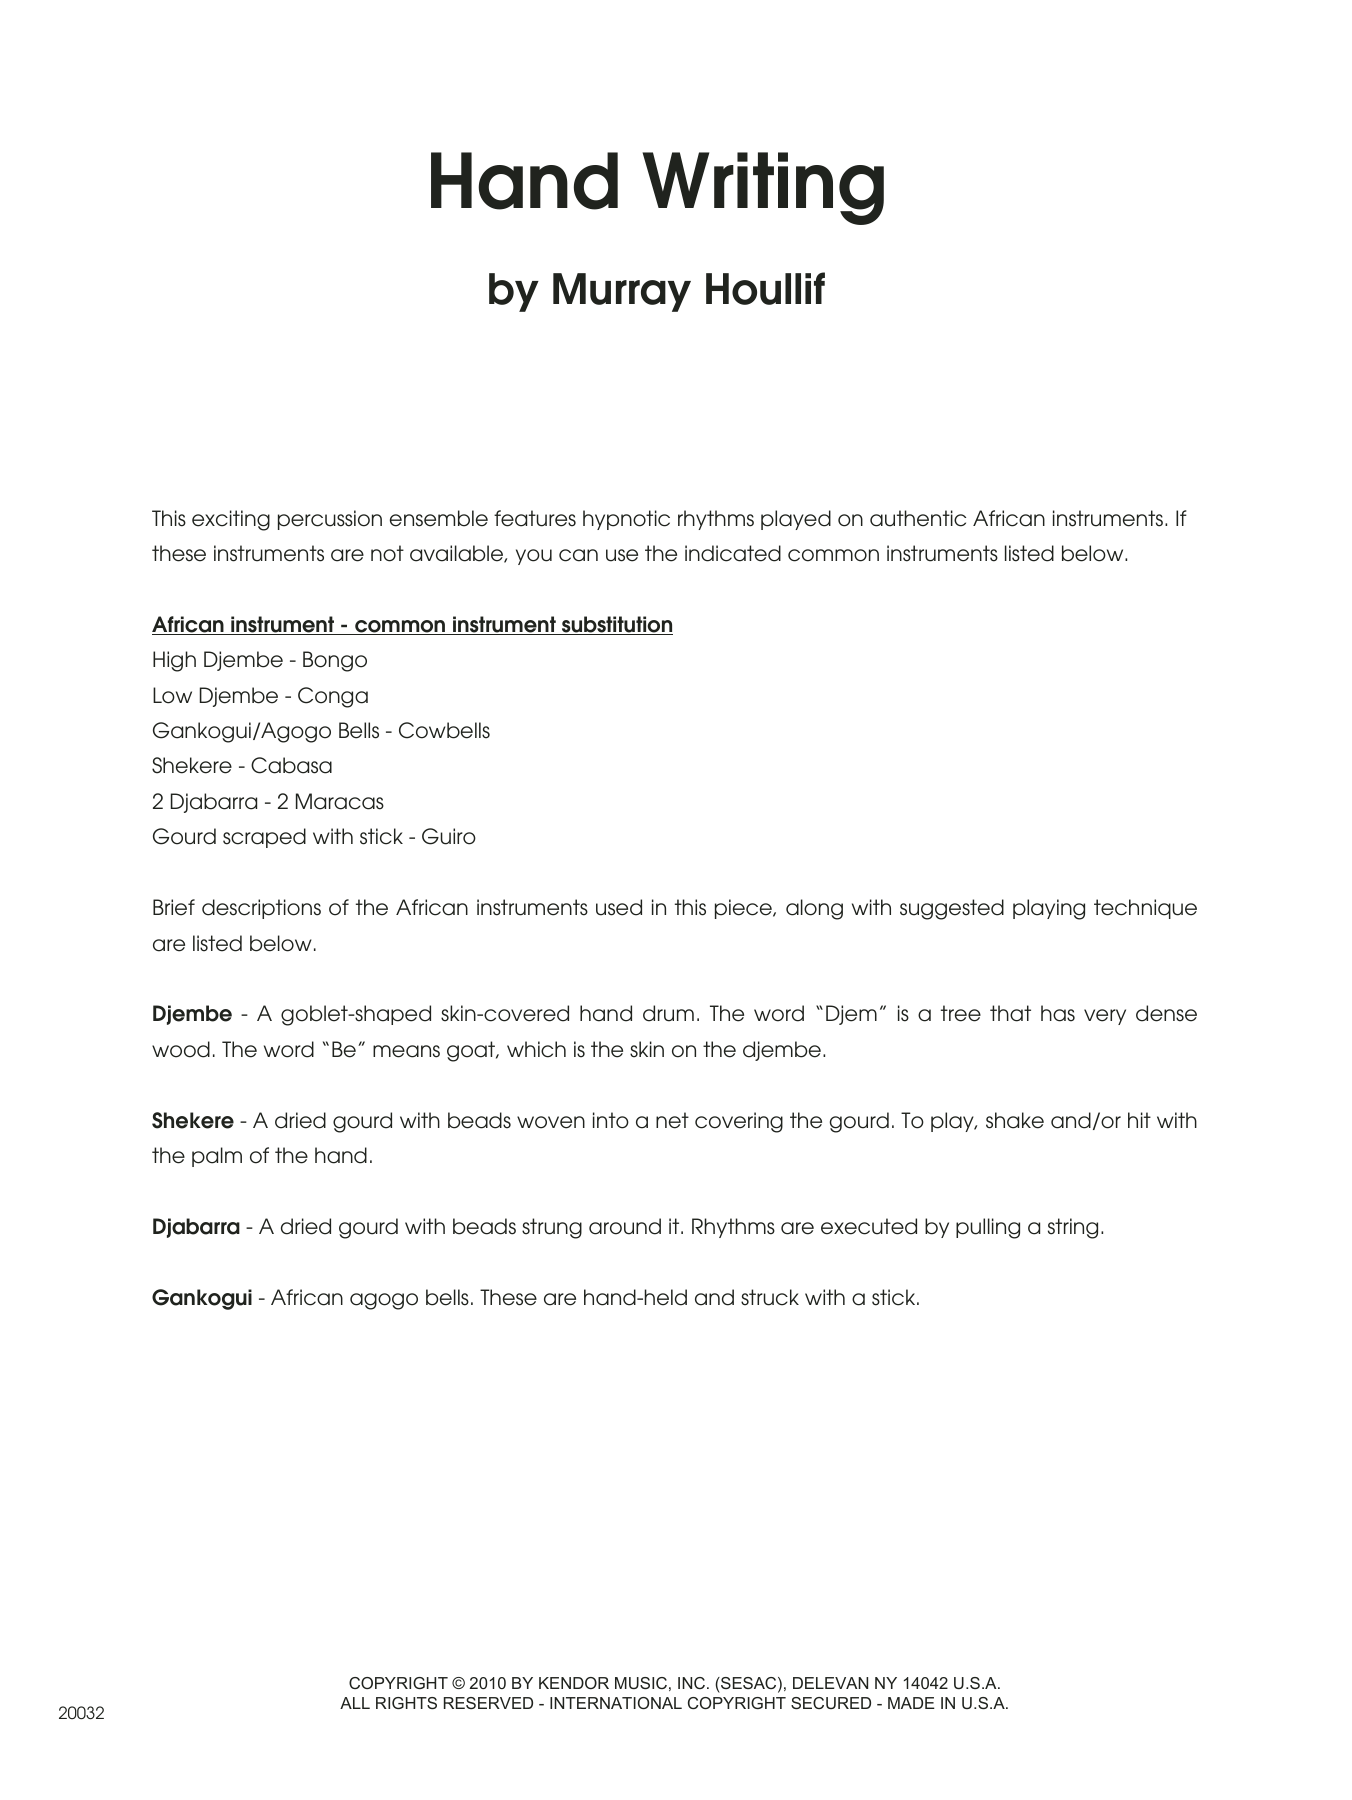 Download Murray Houllif Hand Writing - Full Score Sheet Music